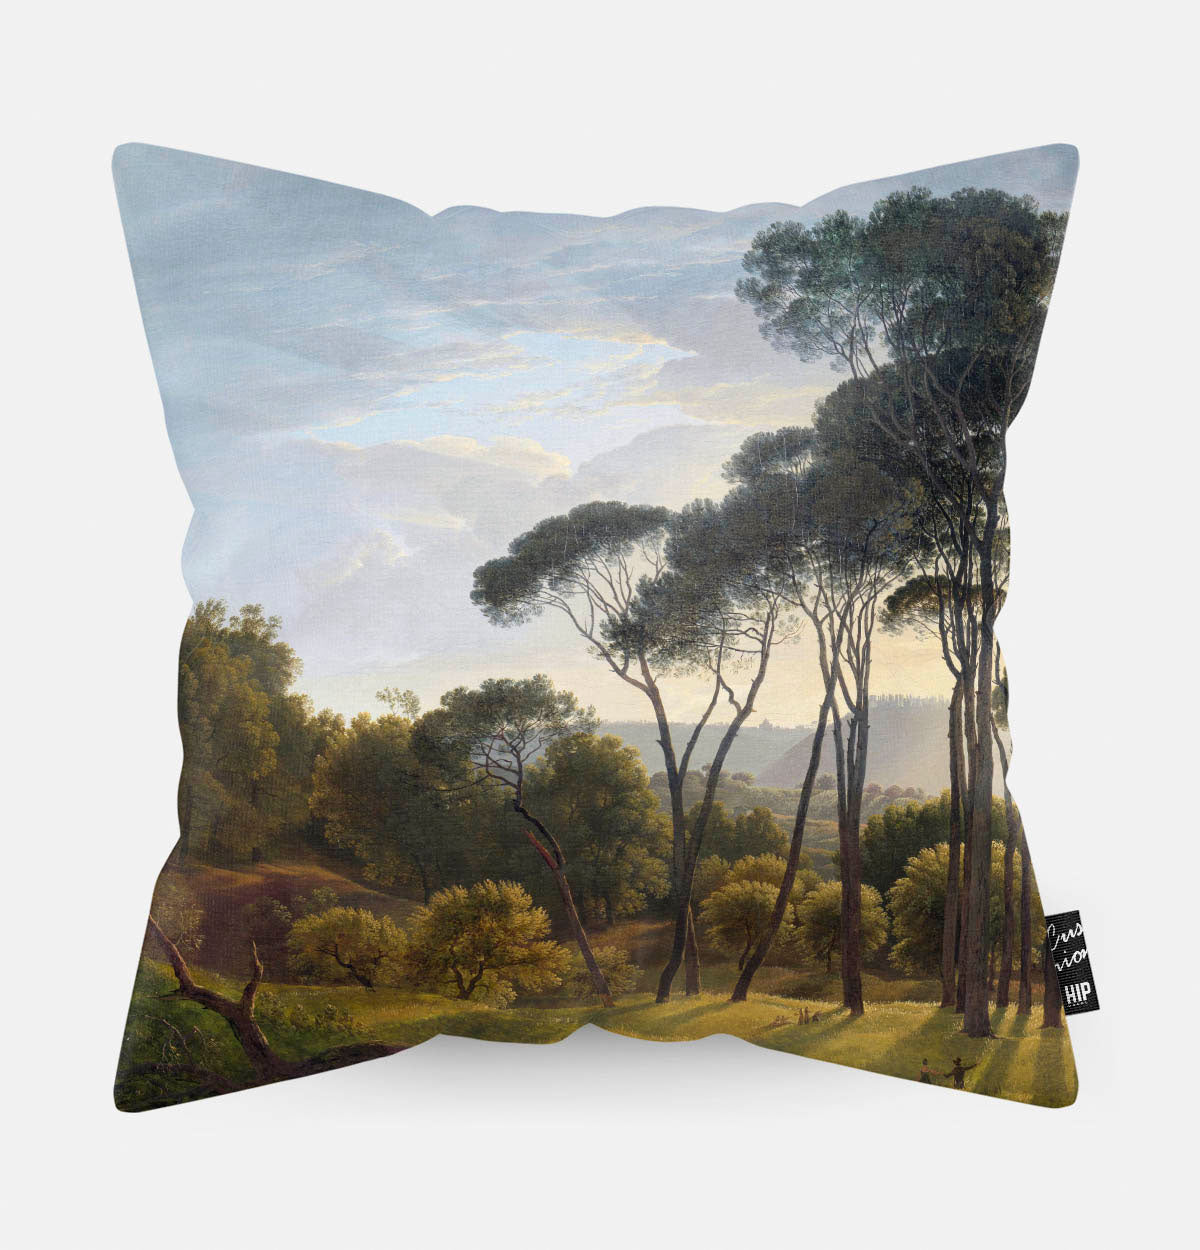 Kussen met schilderij van italiaans landschap met parasoldennen erop afgebeeld.